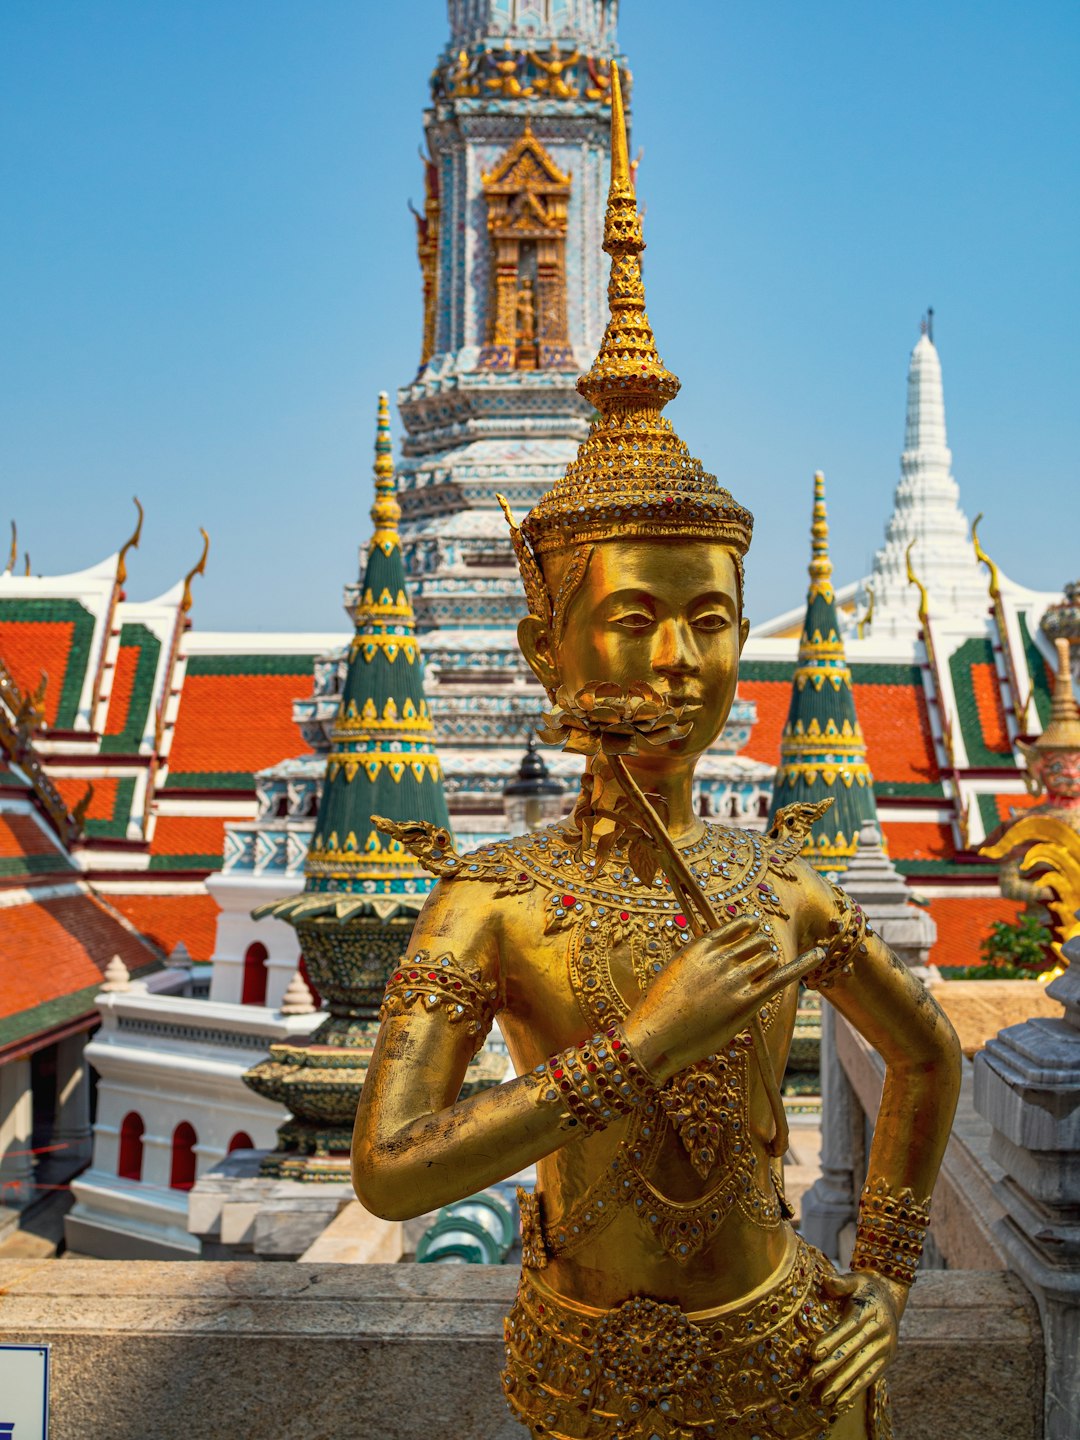 Landmark photo spot Phra Borom Maha Ratchawang Wat Phra Mahatat